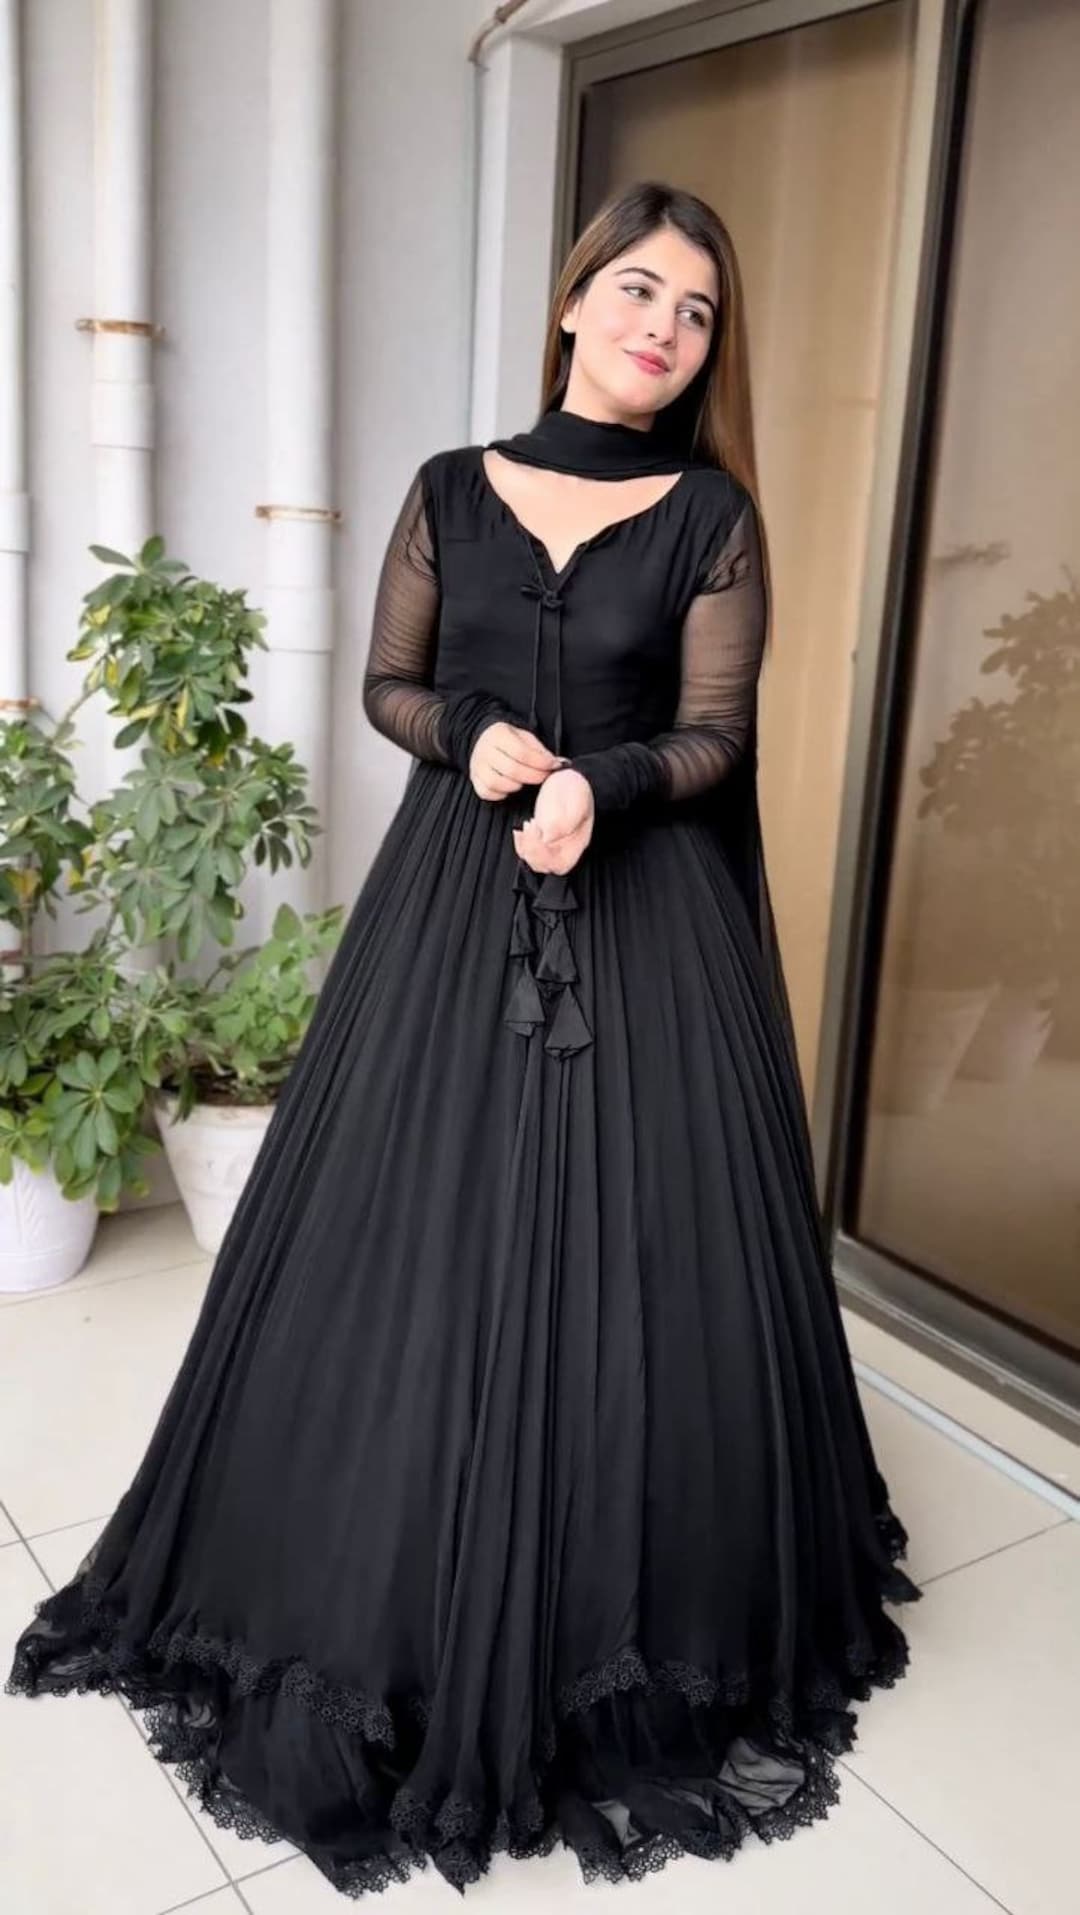 Velvet embroidered dress | Deepika Padukone